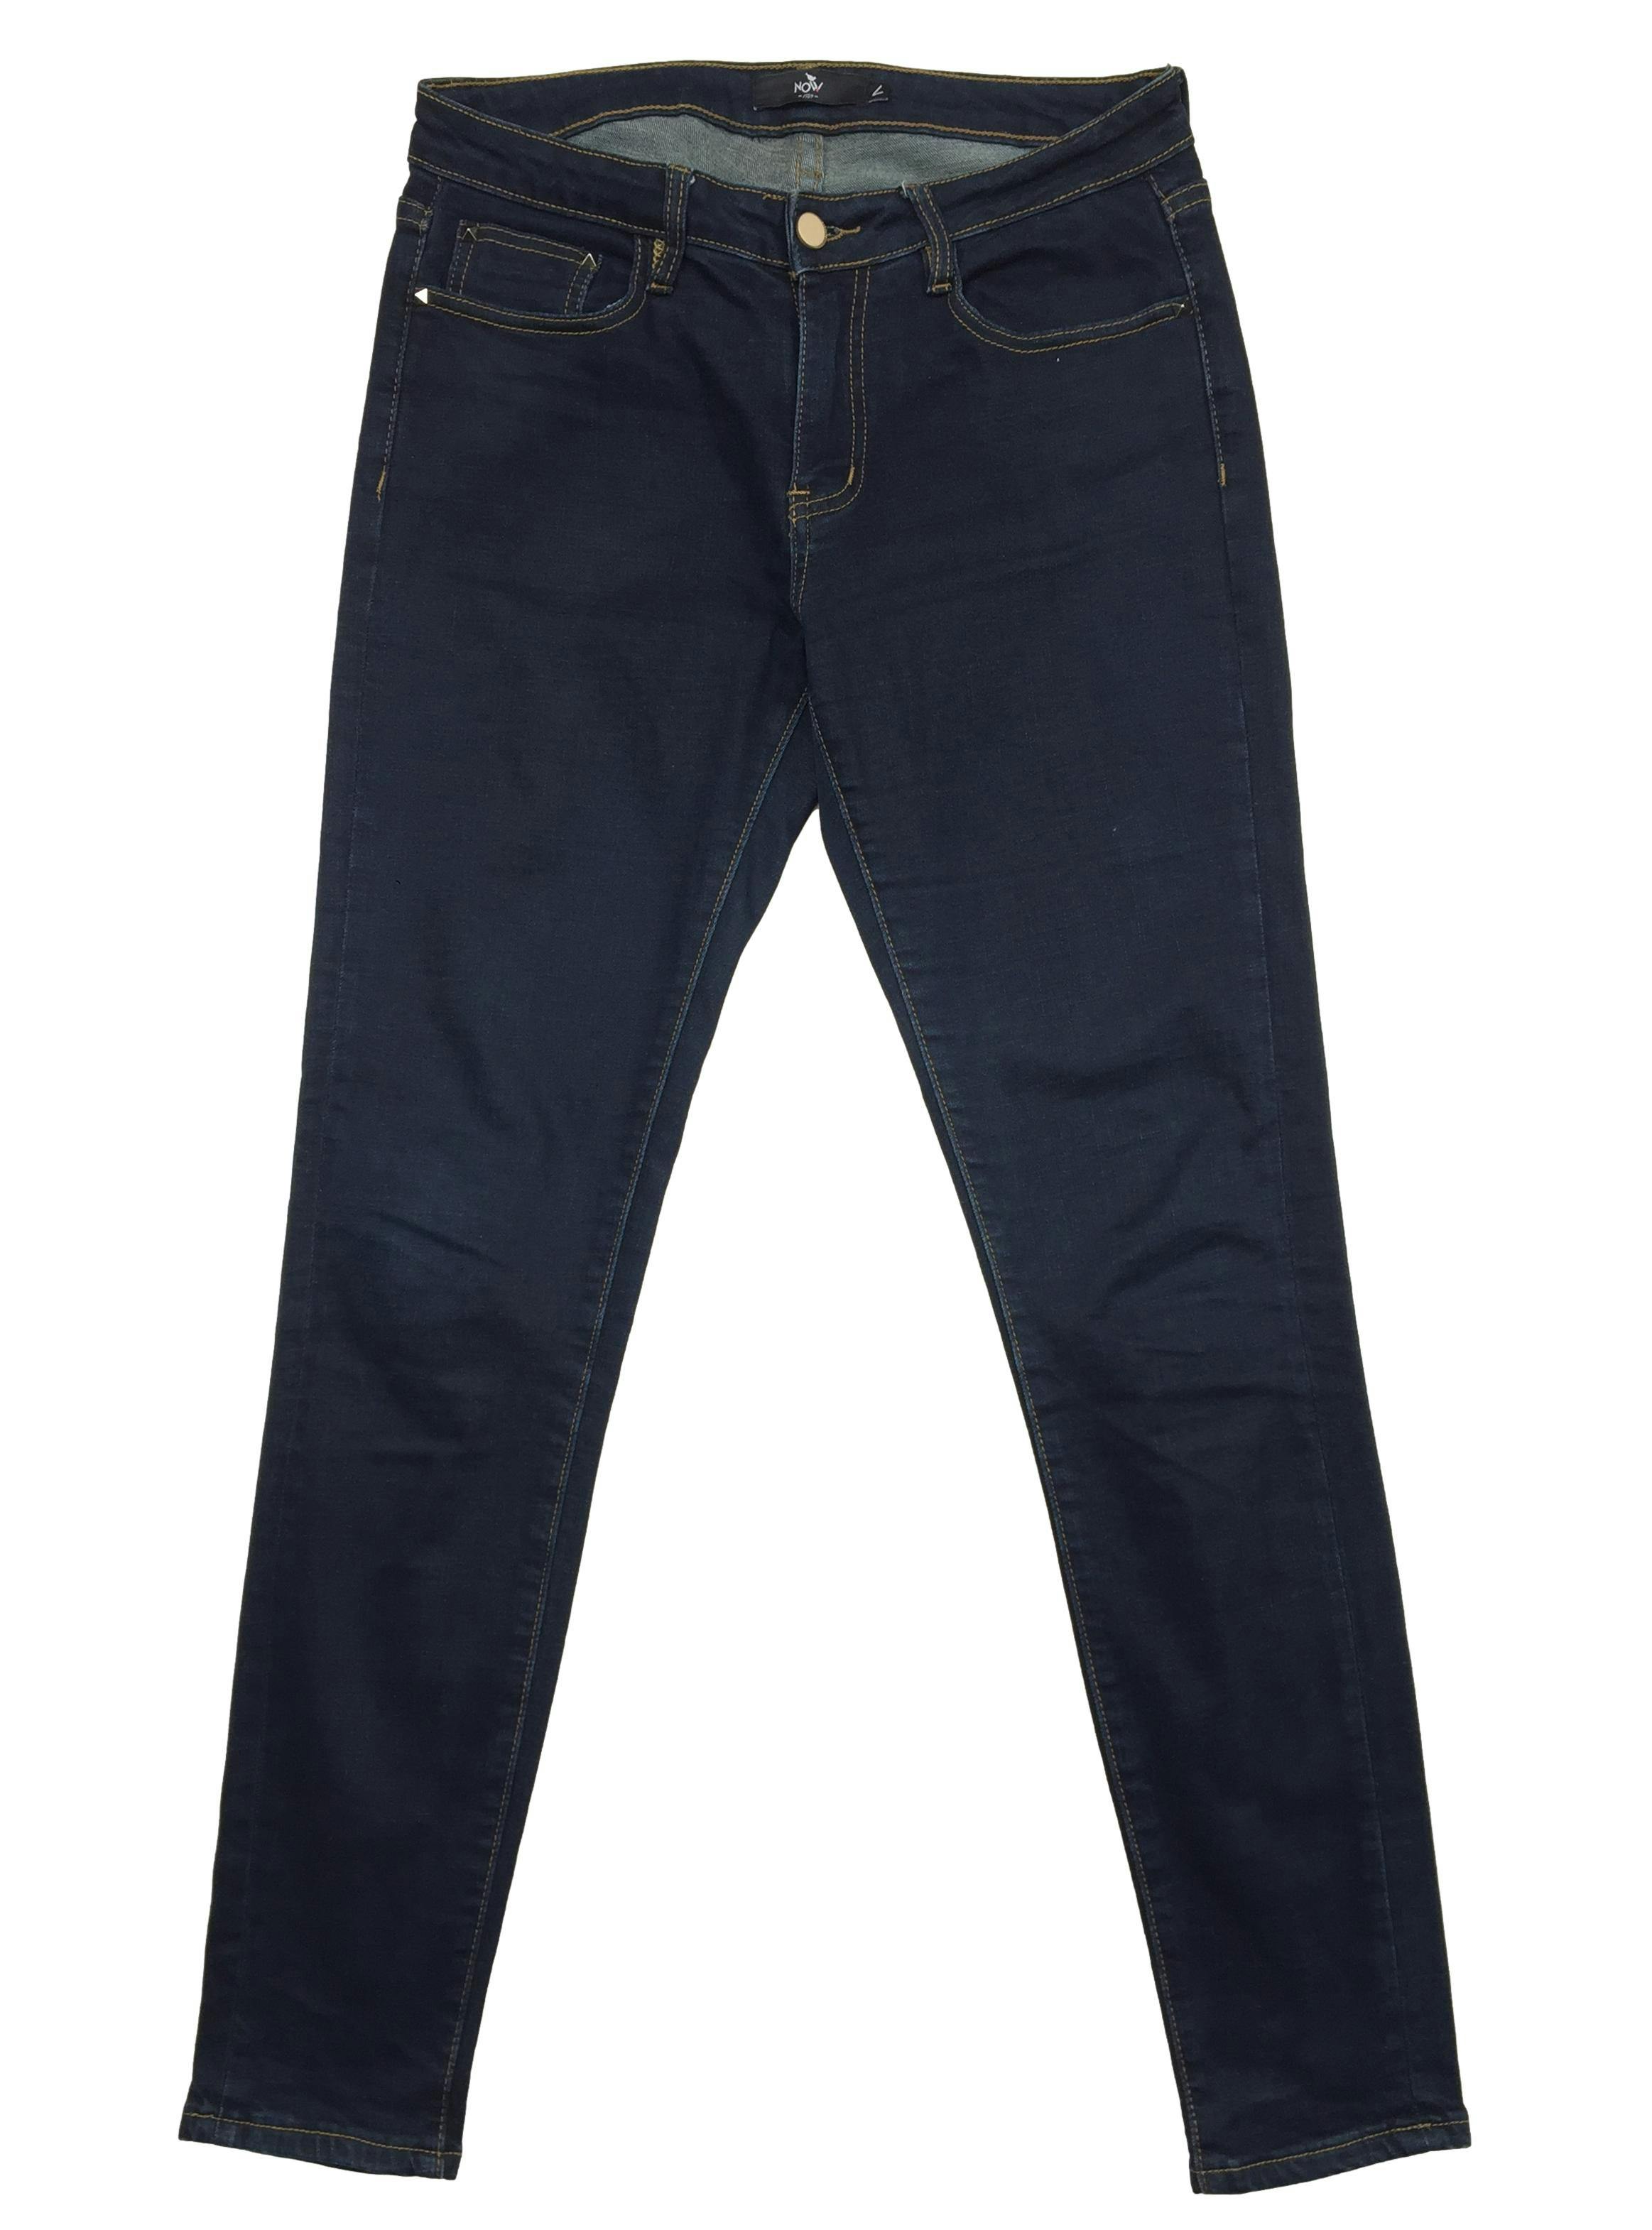 Pantalón jean Now azul stretch con detalles de tachas en los bolsillos. Cintura 80cm, Tiro 23cm, Largo 99cm